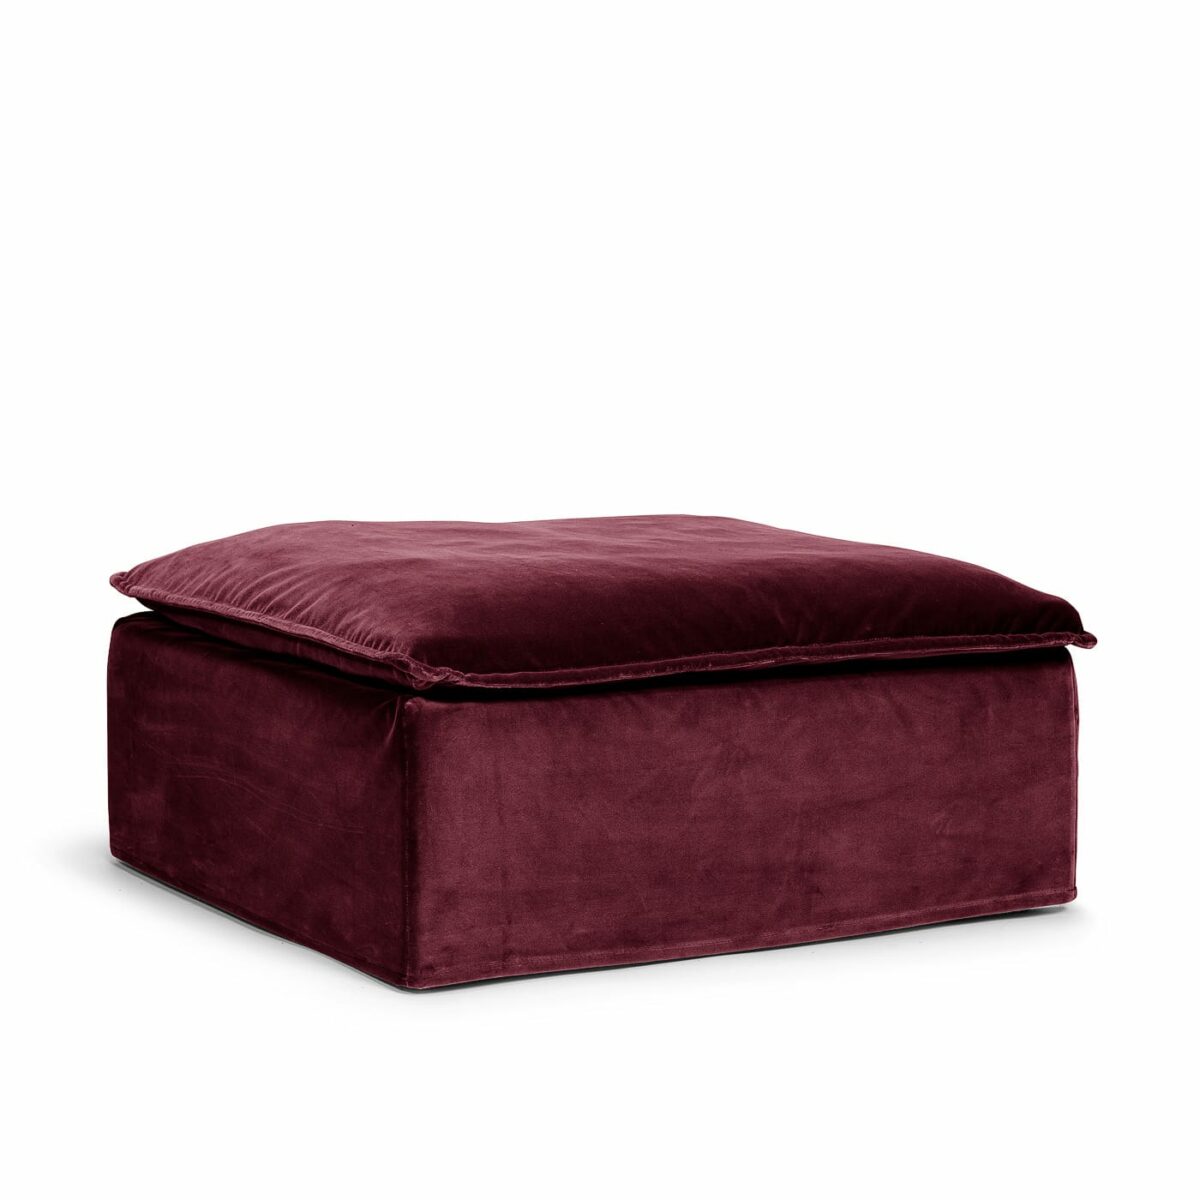 Luca Original 2-Seat Sofa Ruby Red